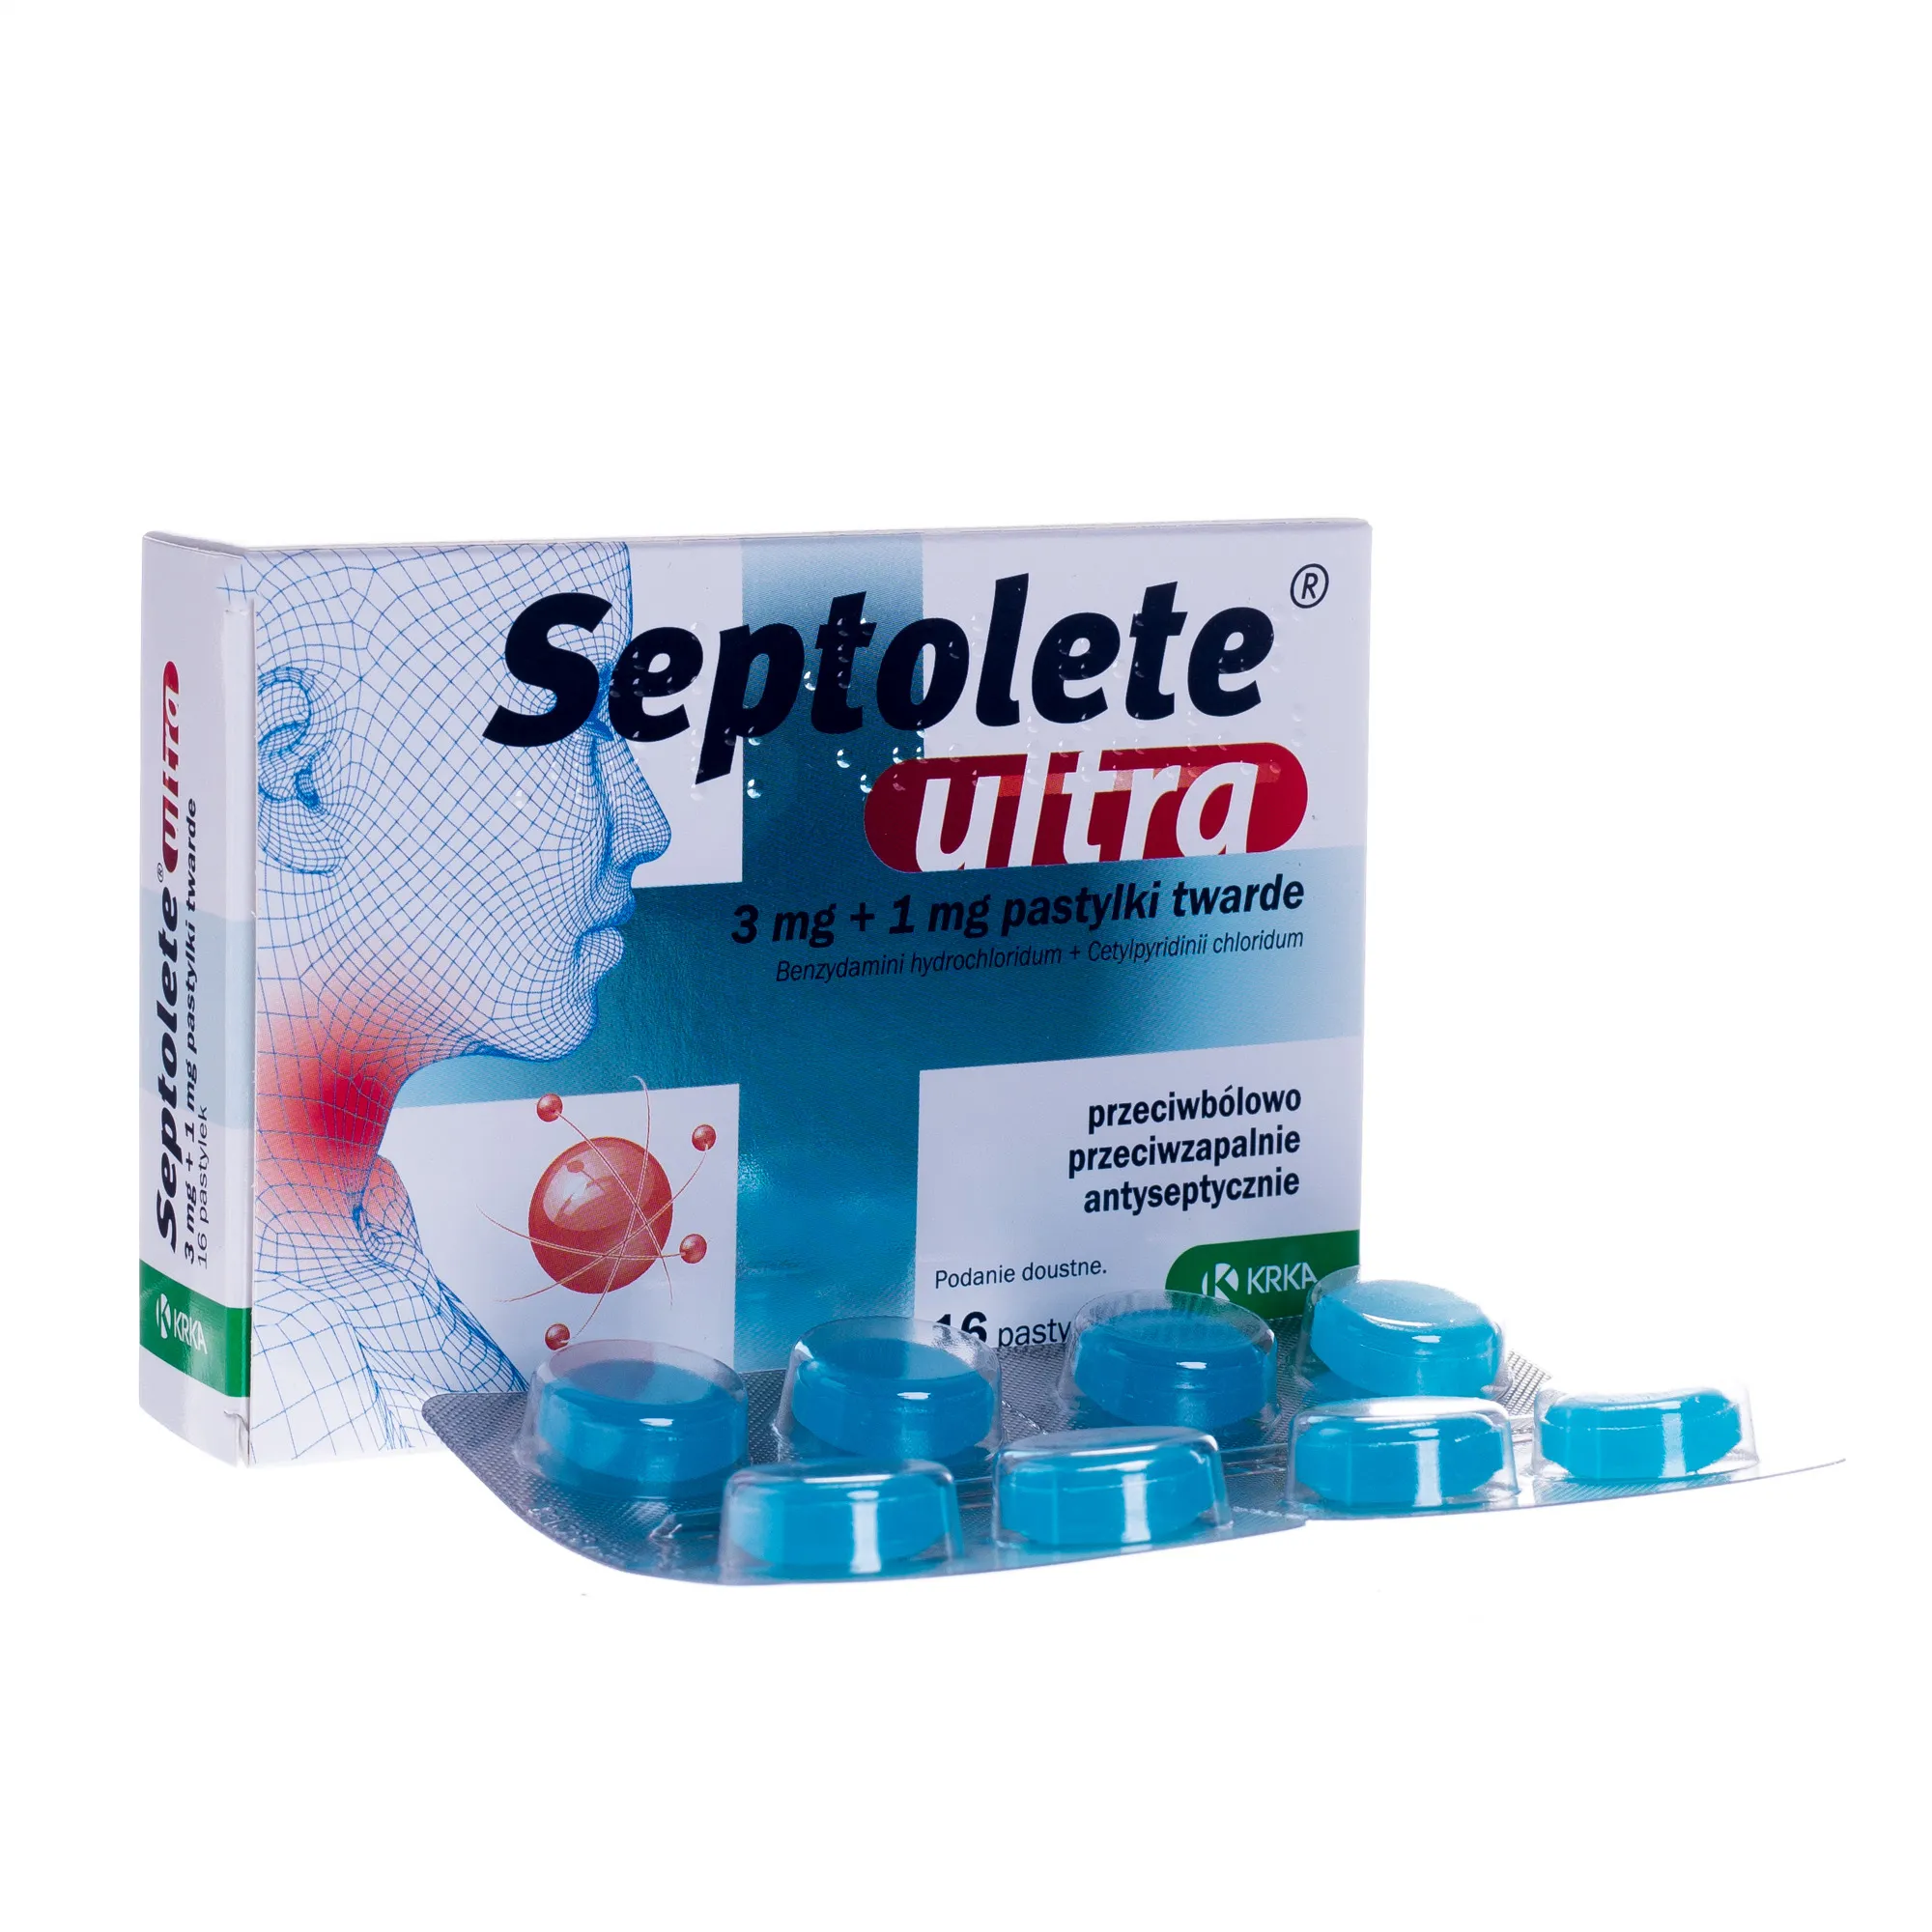 Septolete ultra o smaku eukaliptusowym, 3 mg + 1 mg, 16 pastylek twardych 